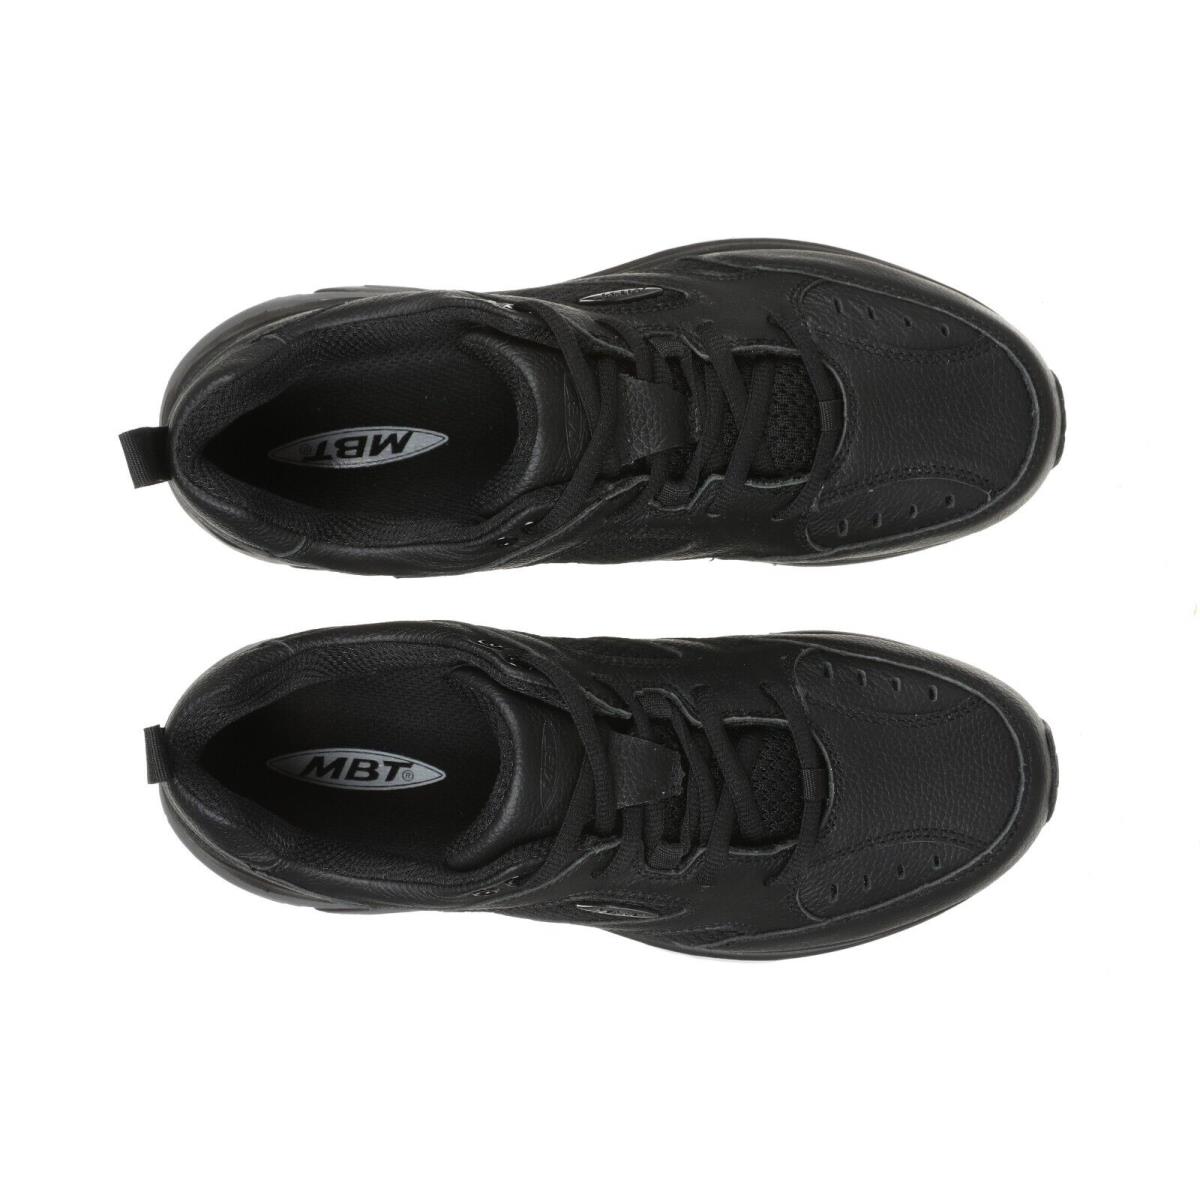 MBT shoes ANATAKA - BLACK-702940-03S 4